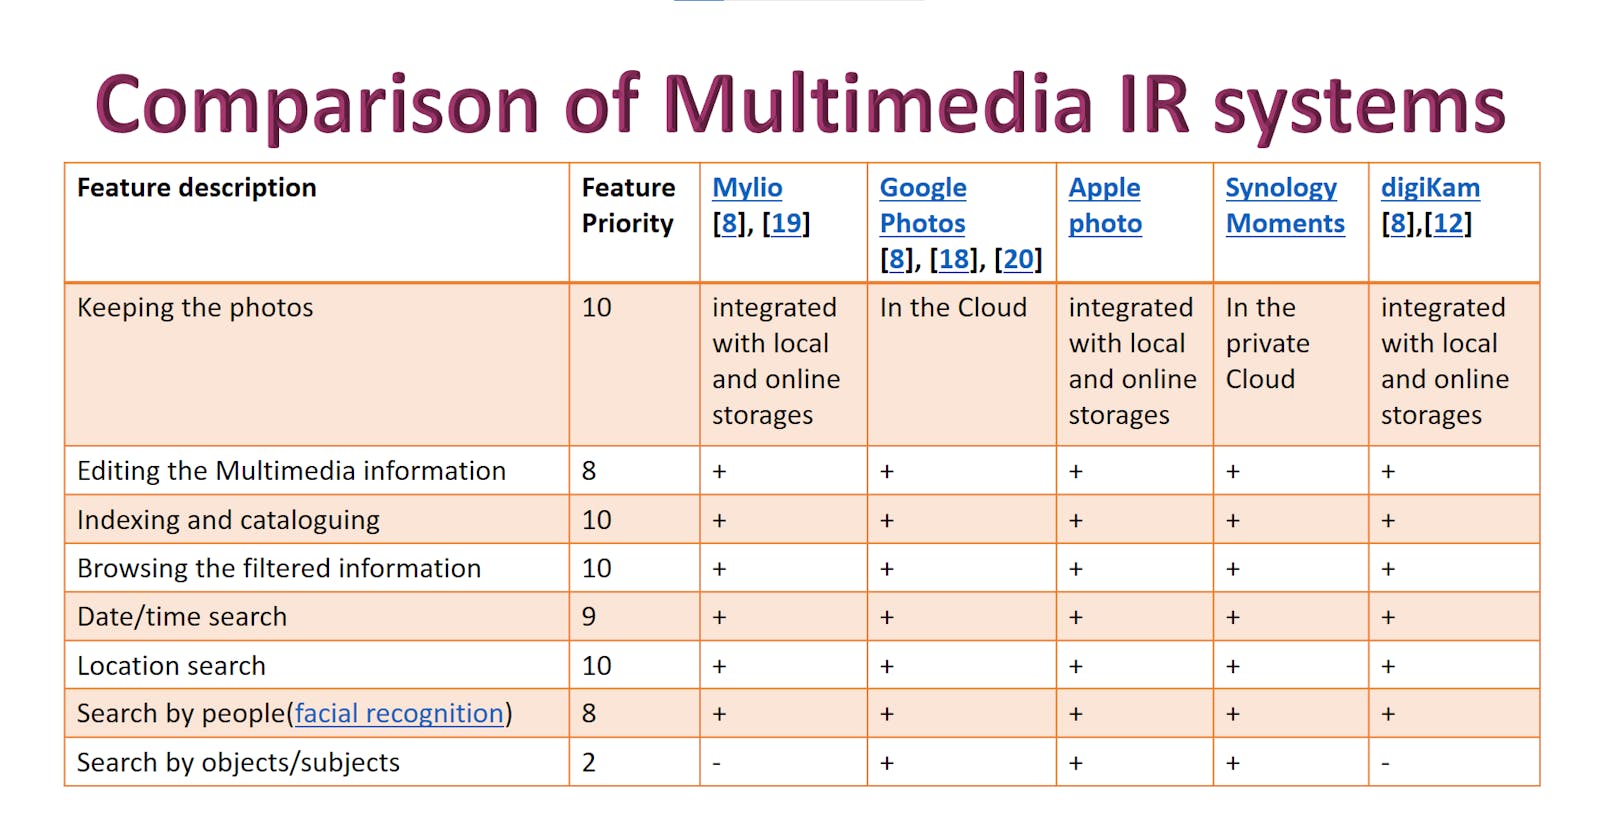 Multimedia IR Systems analyze